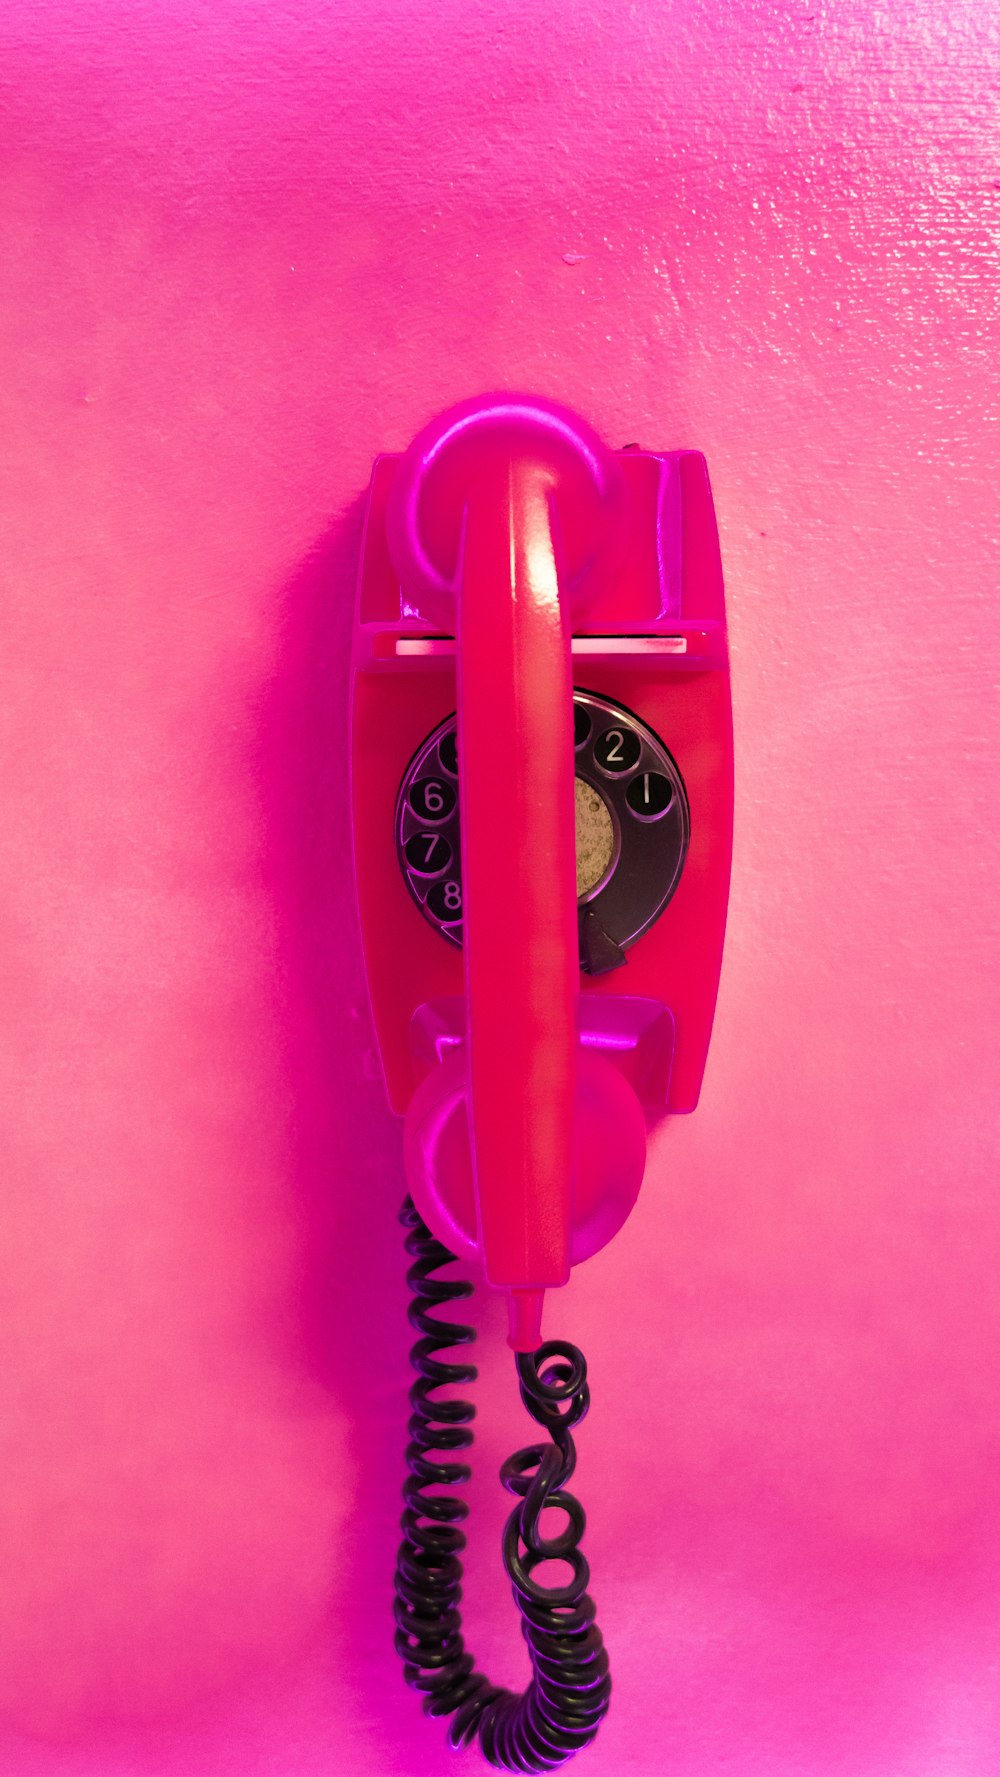 Un telefono rosso appeso a una parete rosa